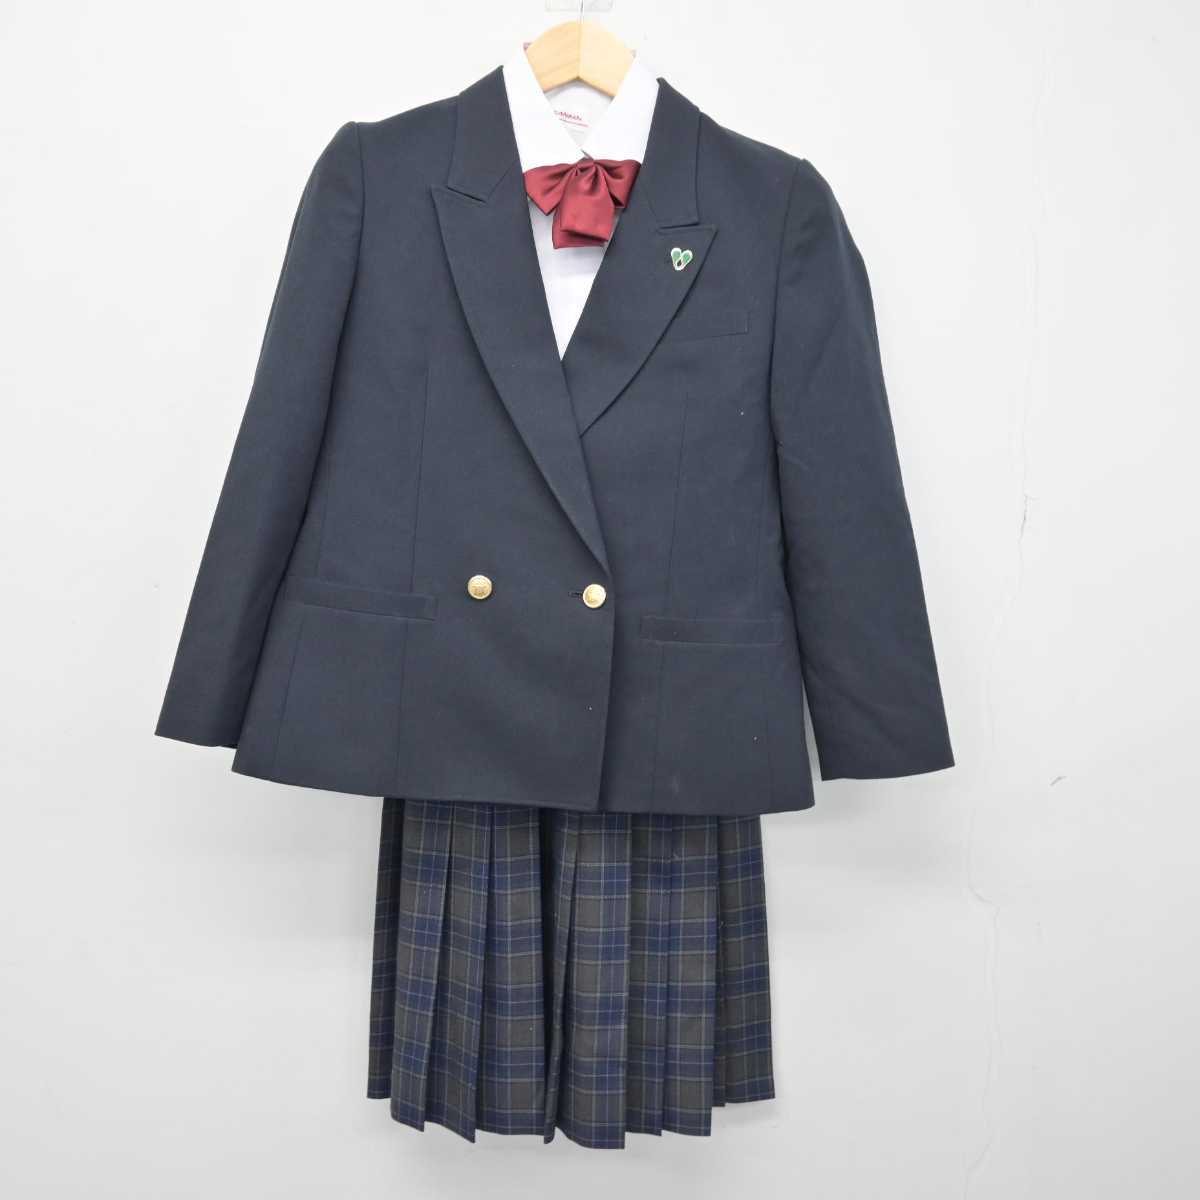 神奈川県川崎市の麻生中学制服、校章、リボン付 - その他